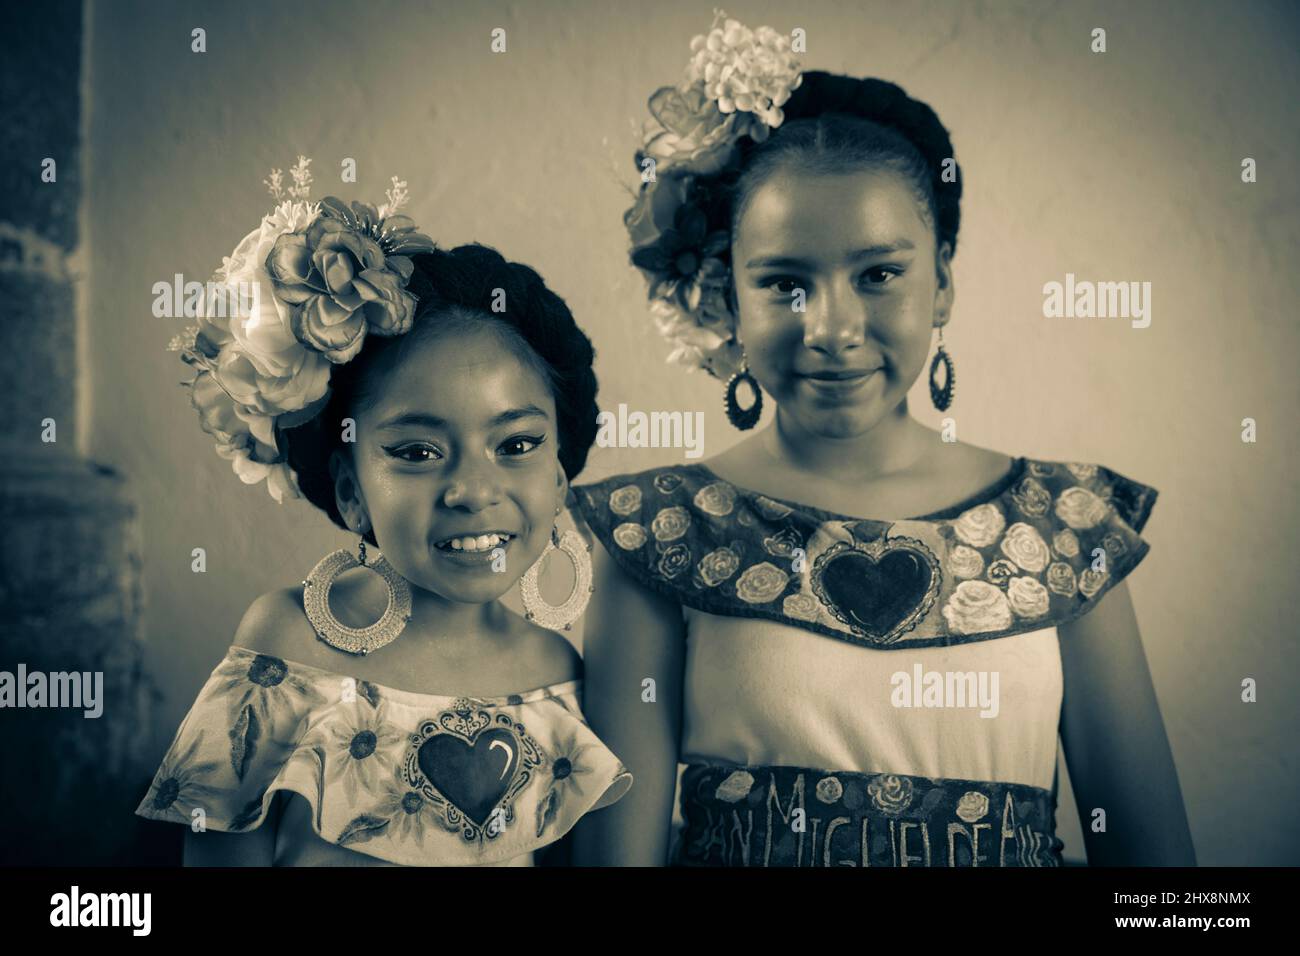 Mexique, Etat de Guanajuato, San Miguel de Allende, 'Dessel de Gigantes', deux jeunes filles se posant en costume avant la parade Banque D'Images